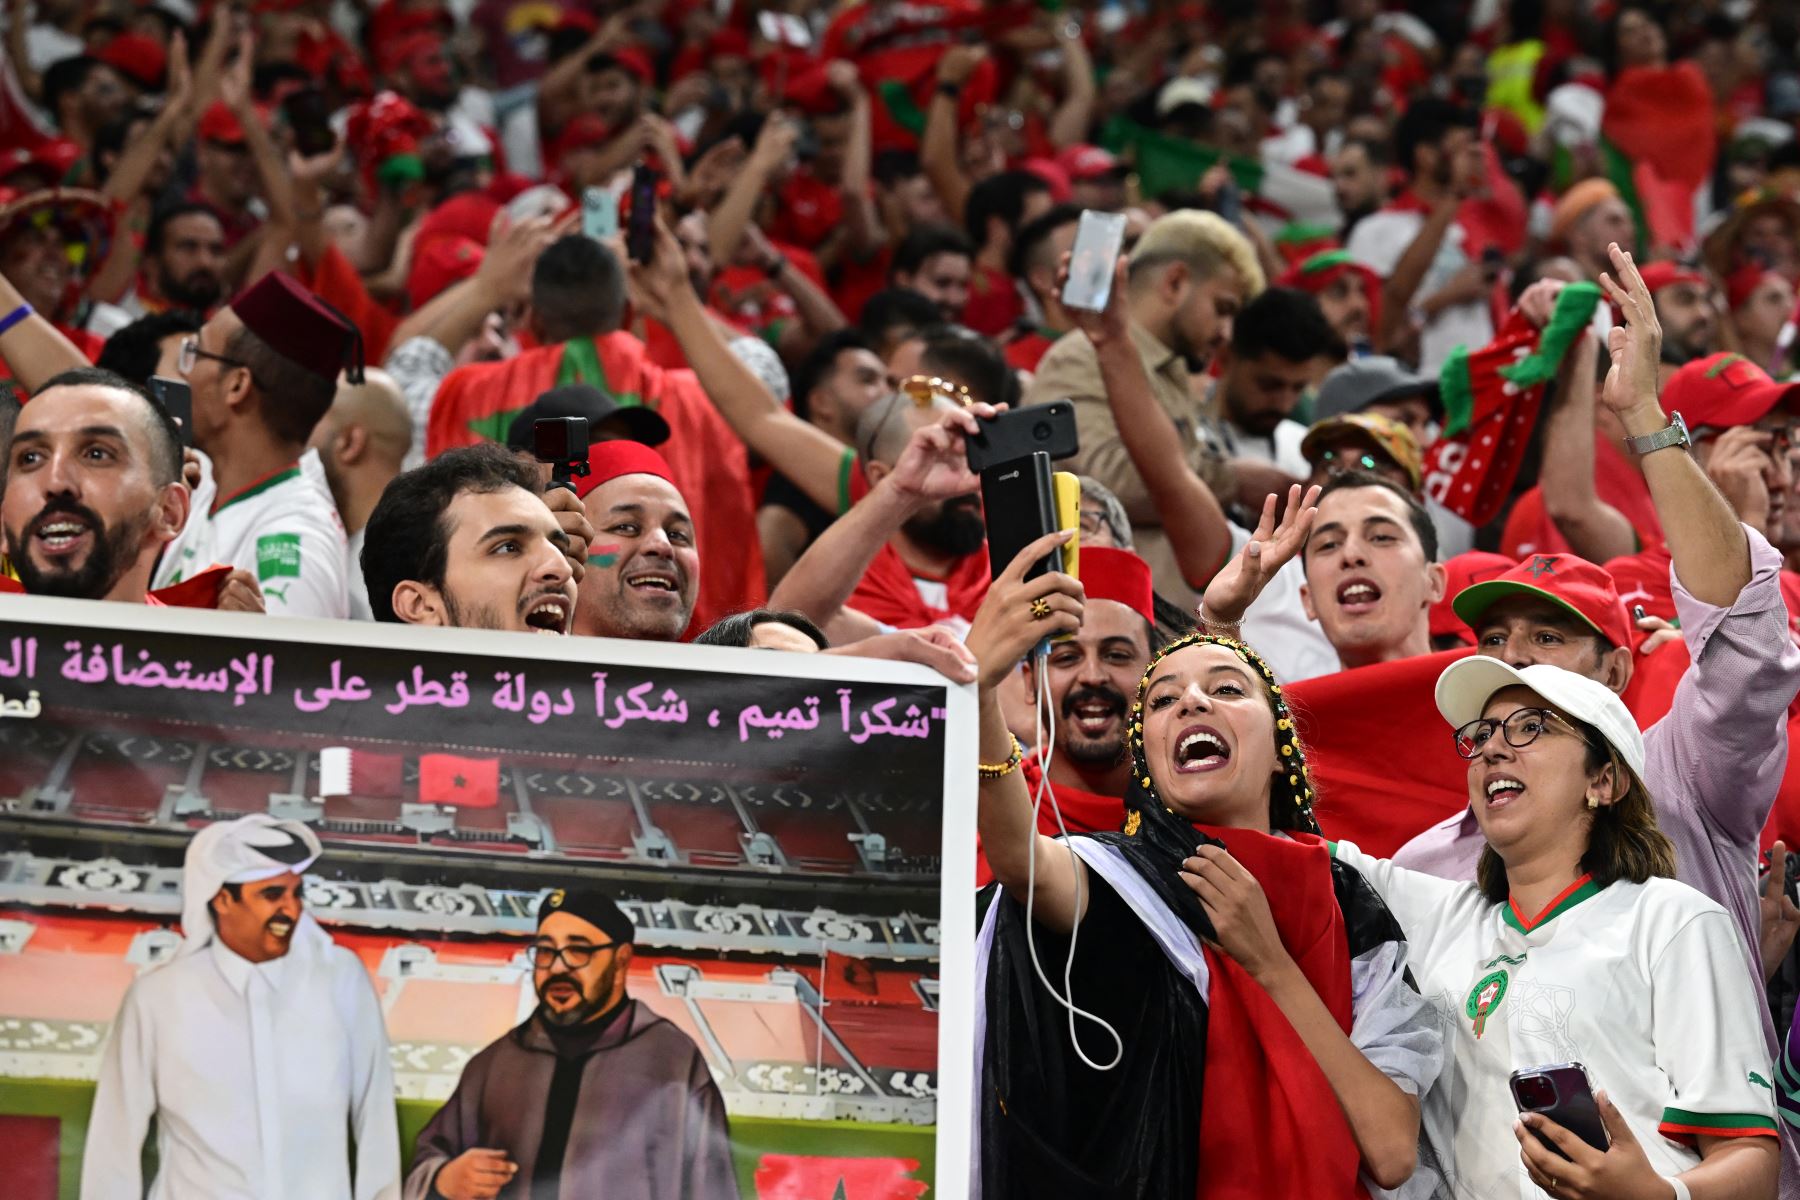 Los fanáticos de Marruecos celebran ganar el partido de fútbol del Grupo F de la Copa Mundial de Qatar 2022 entre Canadá y Marruecos en el Estadio Al-Thumama en Doha el 1 de diciembre de 2022.
Foto: AFP